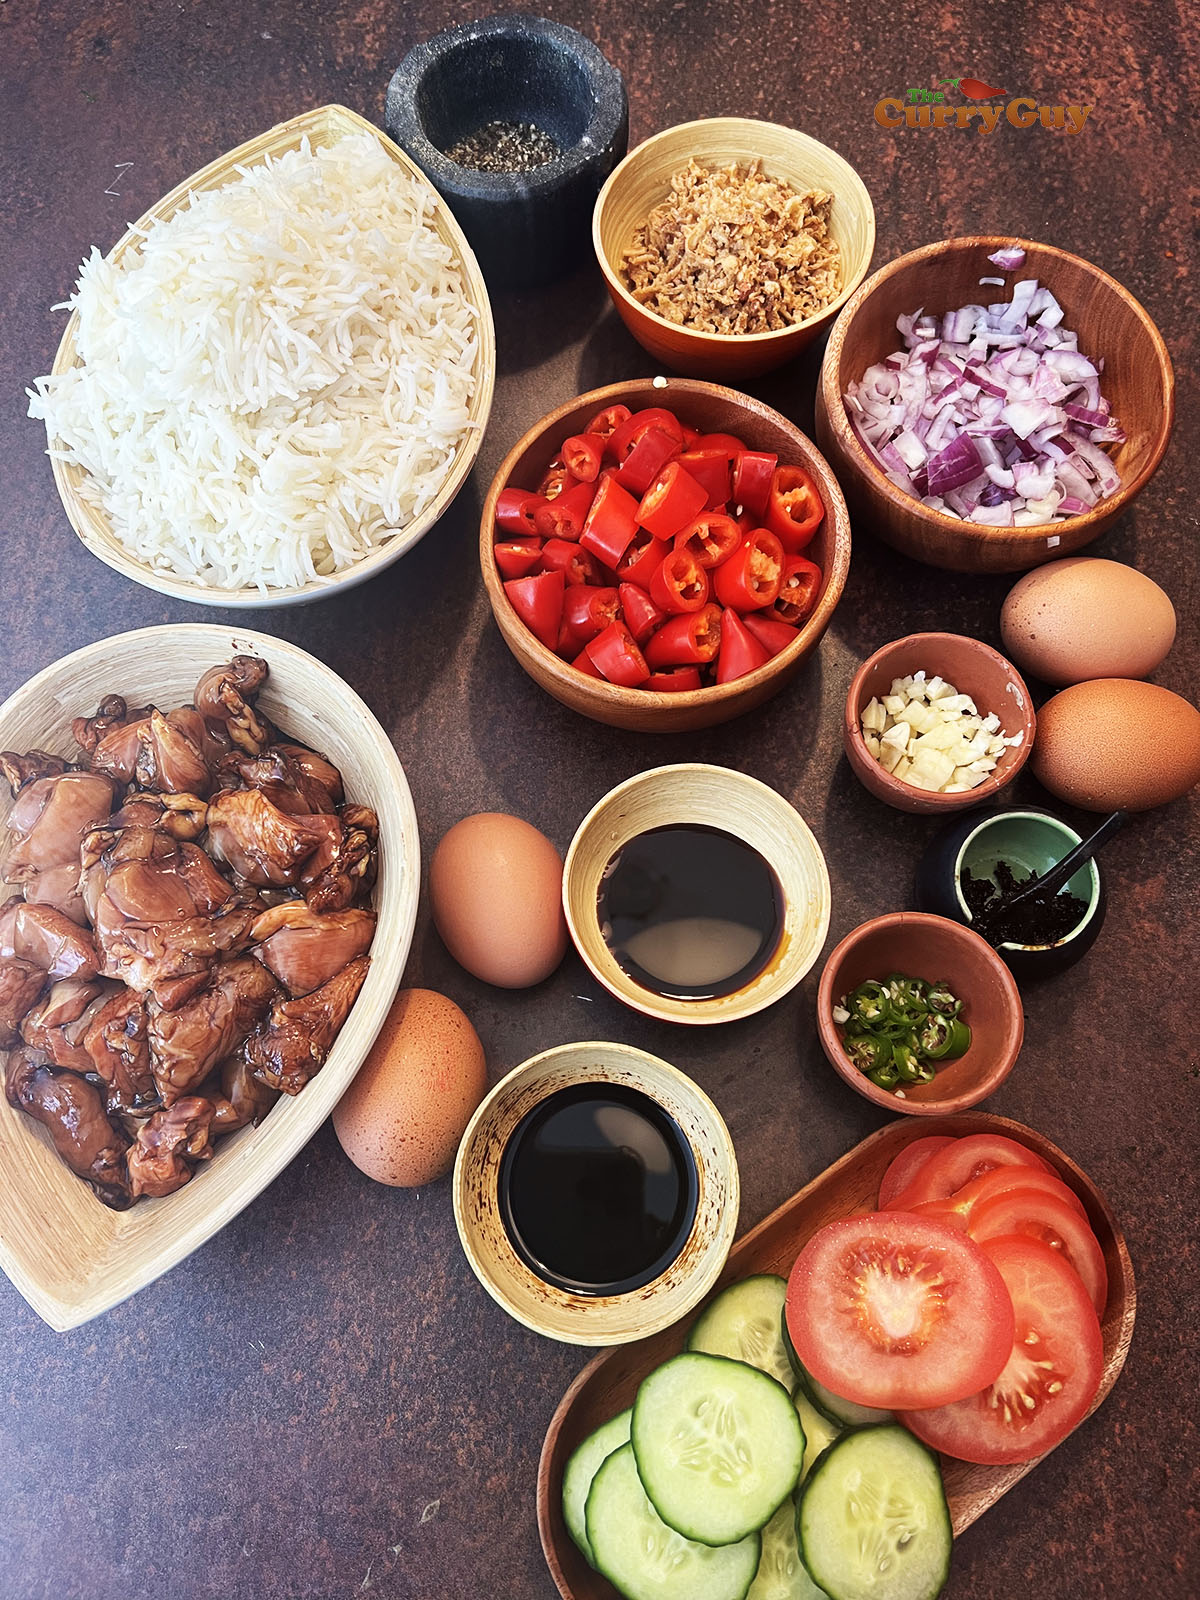 Ingredients for nasi goreng